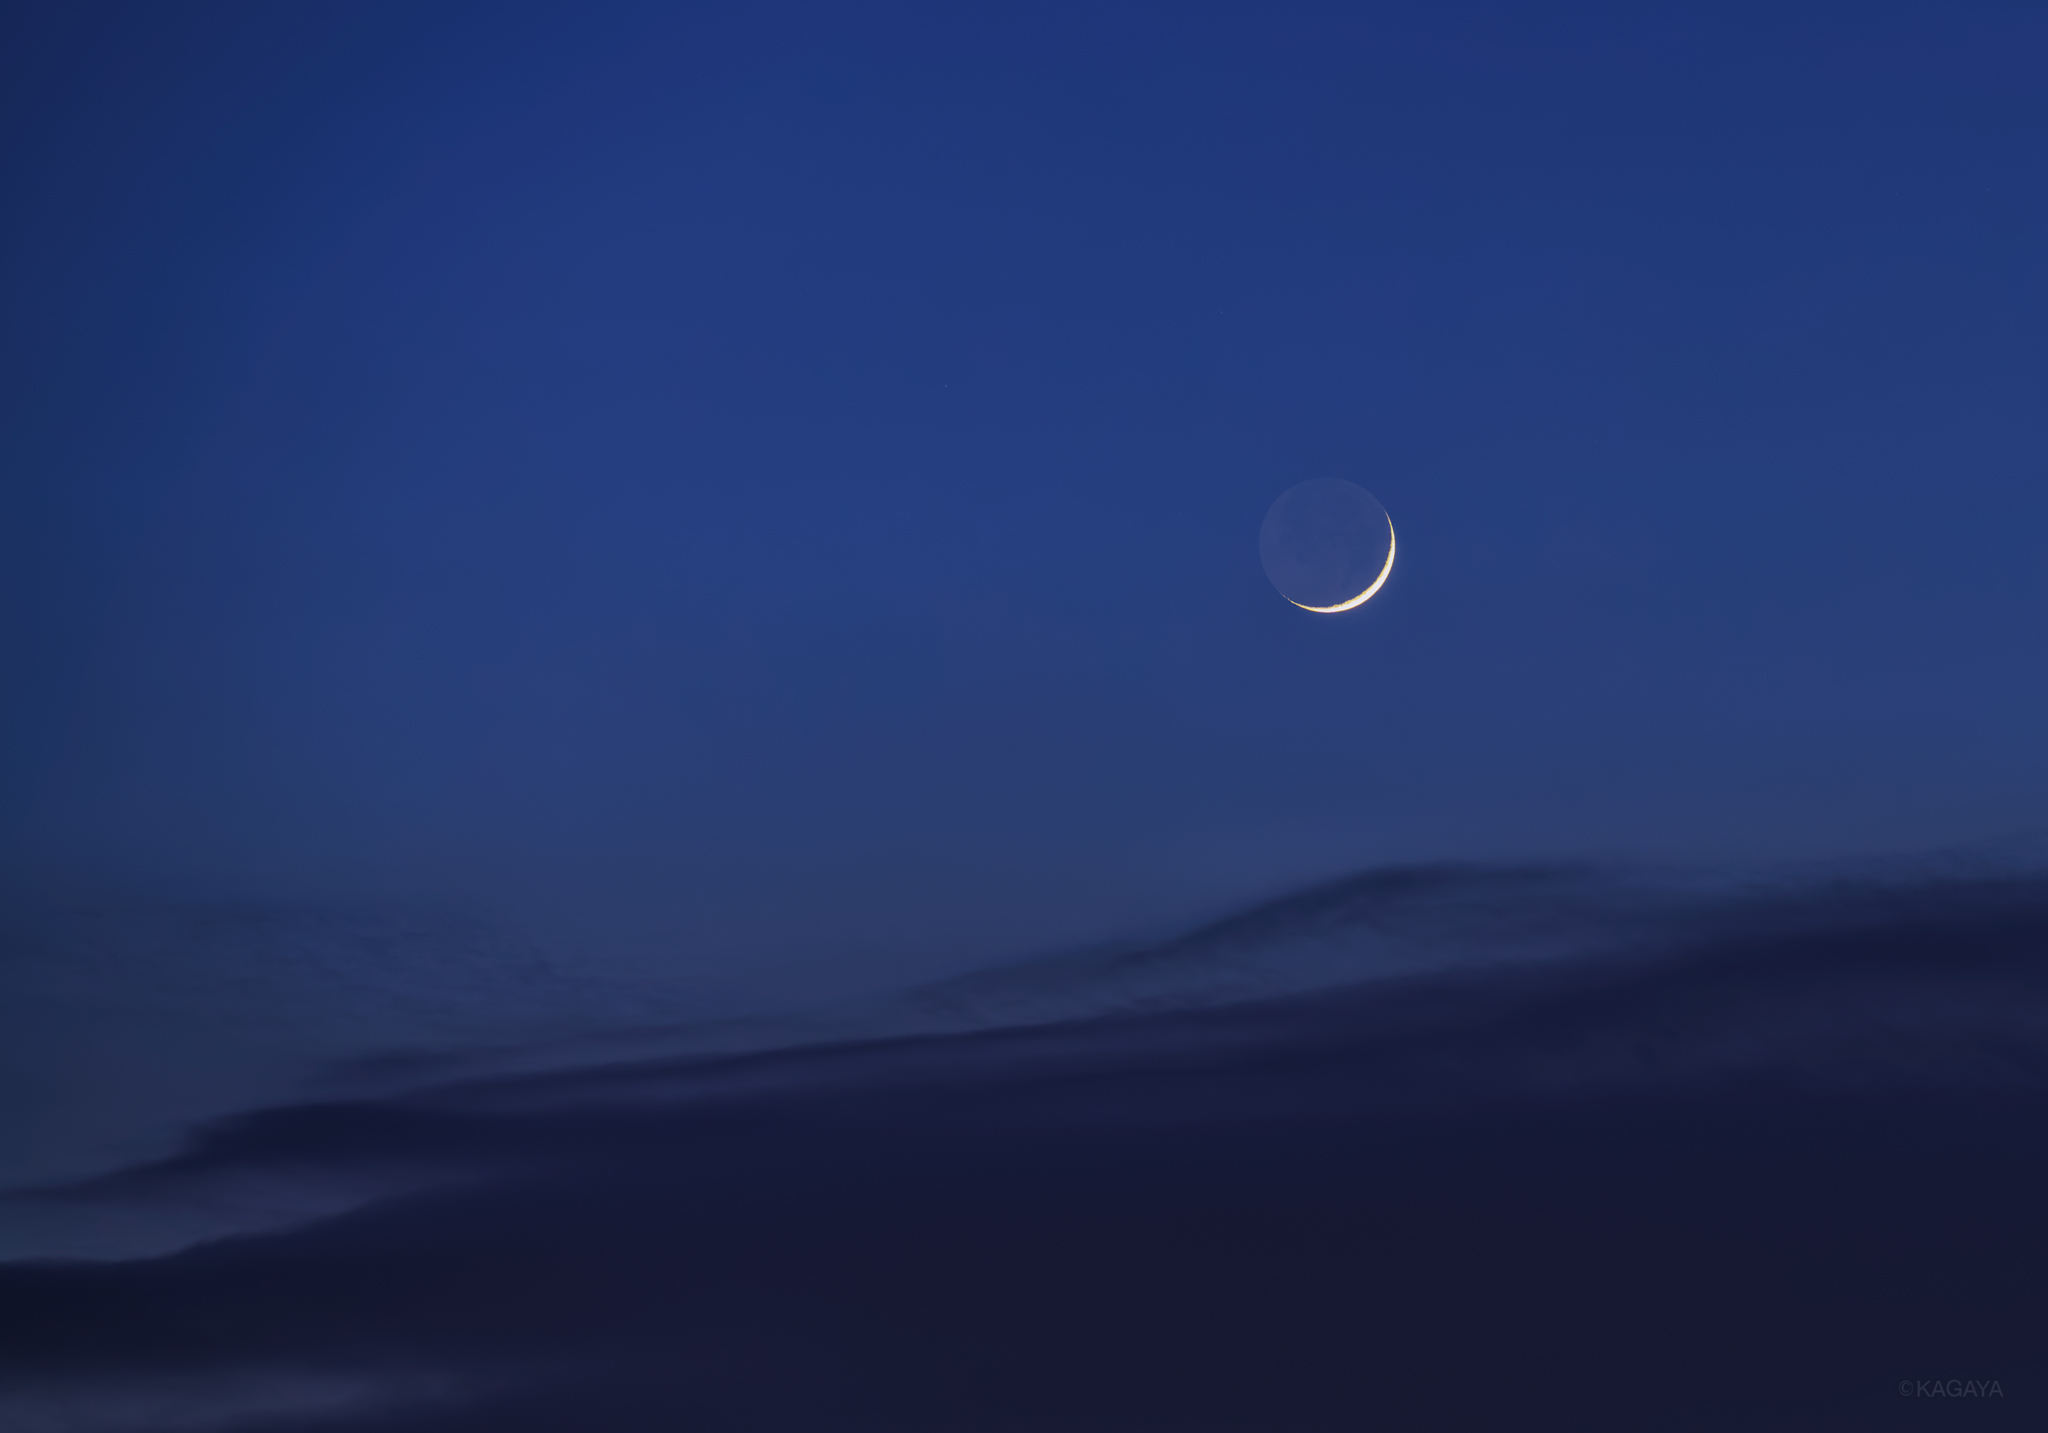 Kagaya まるで三日月が海の波にさらわれていくような 夕暮れ空の一角の つかの間の光景でした 先ほど 東京にて撮影 今日もお疲れさまでした T Co Bq3slxk5 Twitter